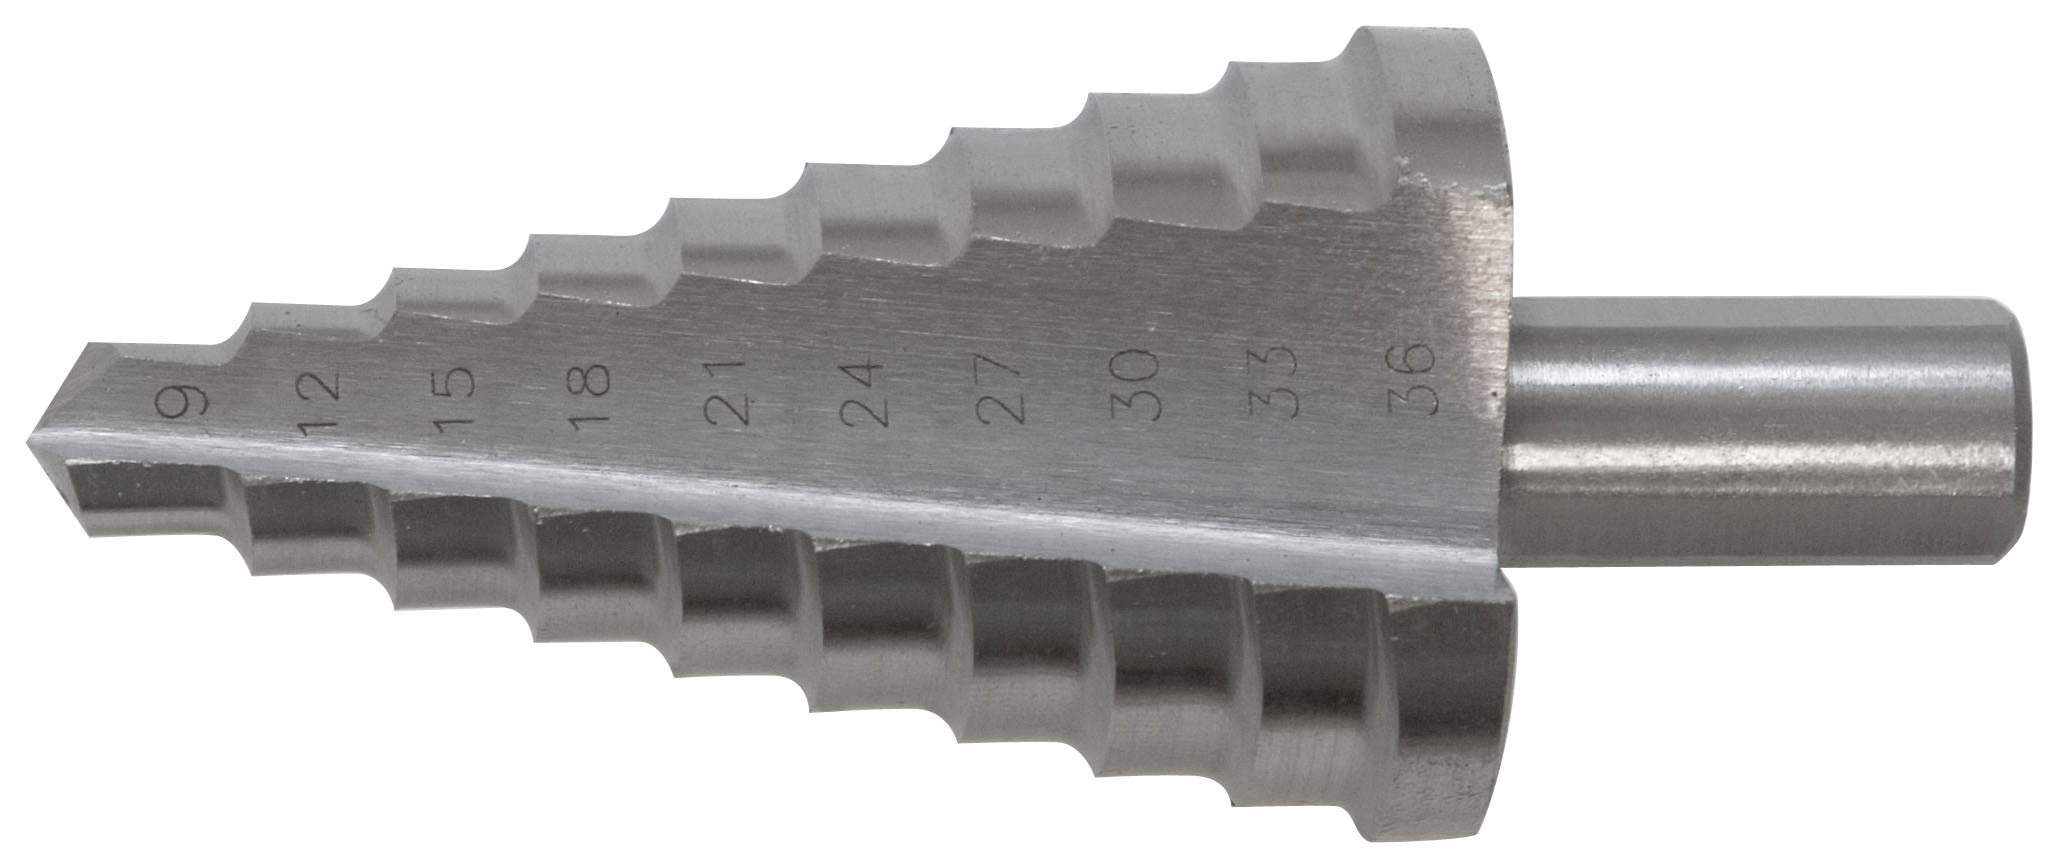 Сверло ступенчатое HSS по металлу, 9 ступеней, 4-12 мм